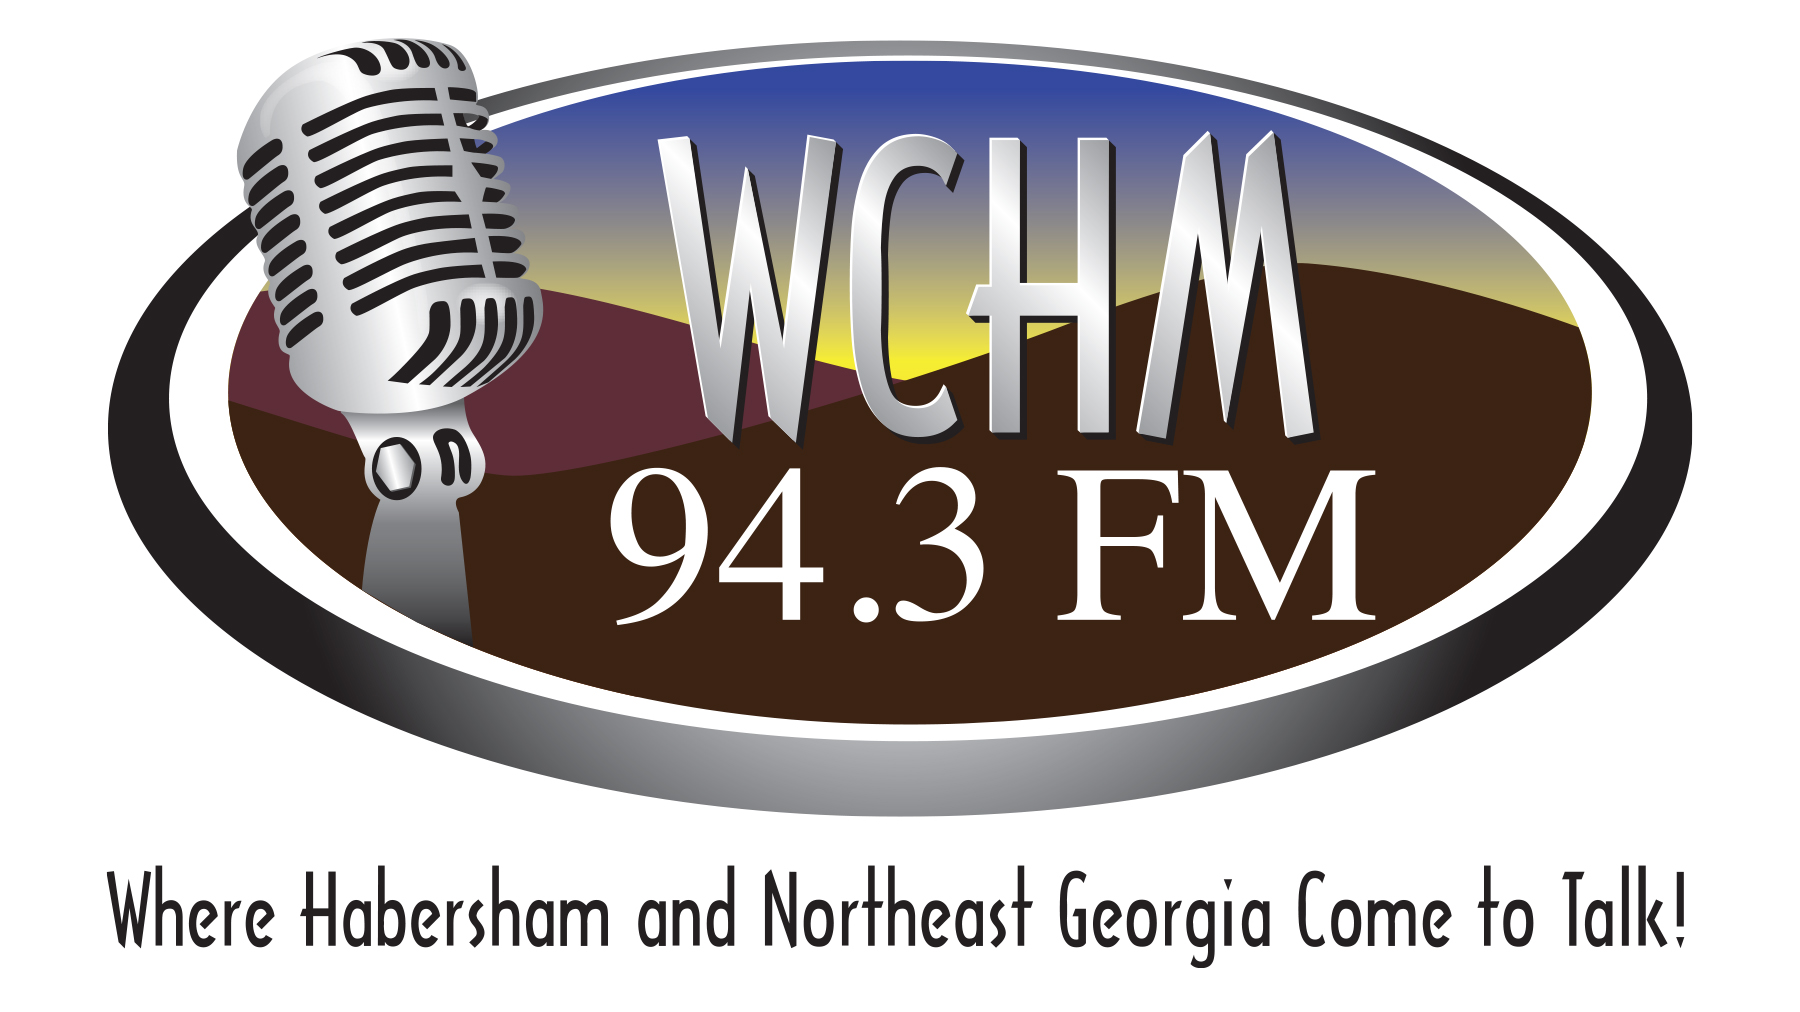 WCHM 94.3 FM 